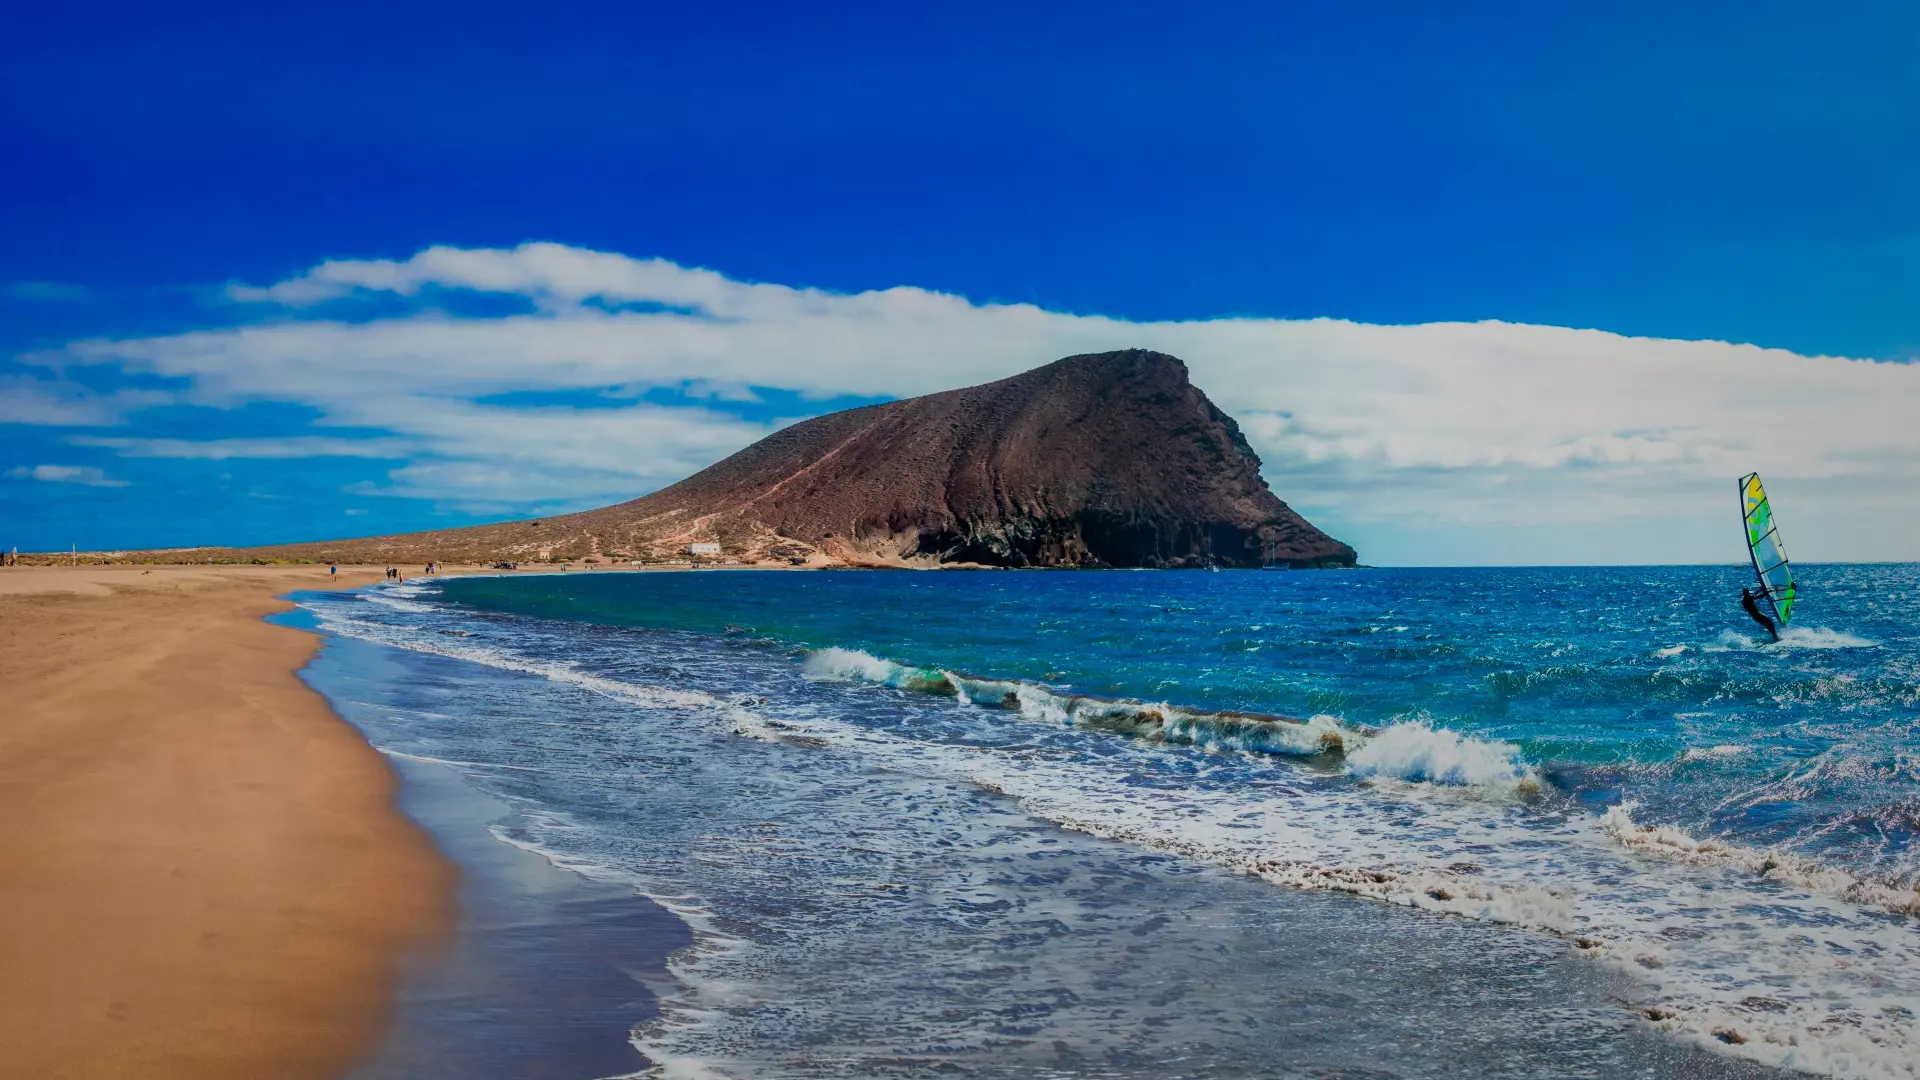 Ofertas de viaje Canarias Baleares 2023 🔆 | Central de Vacaciones